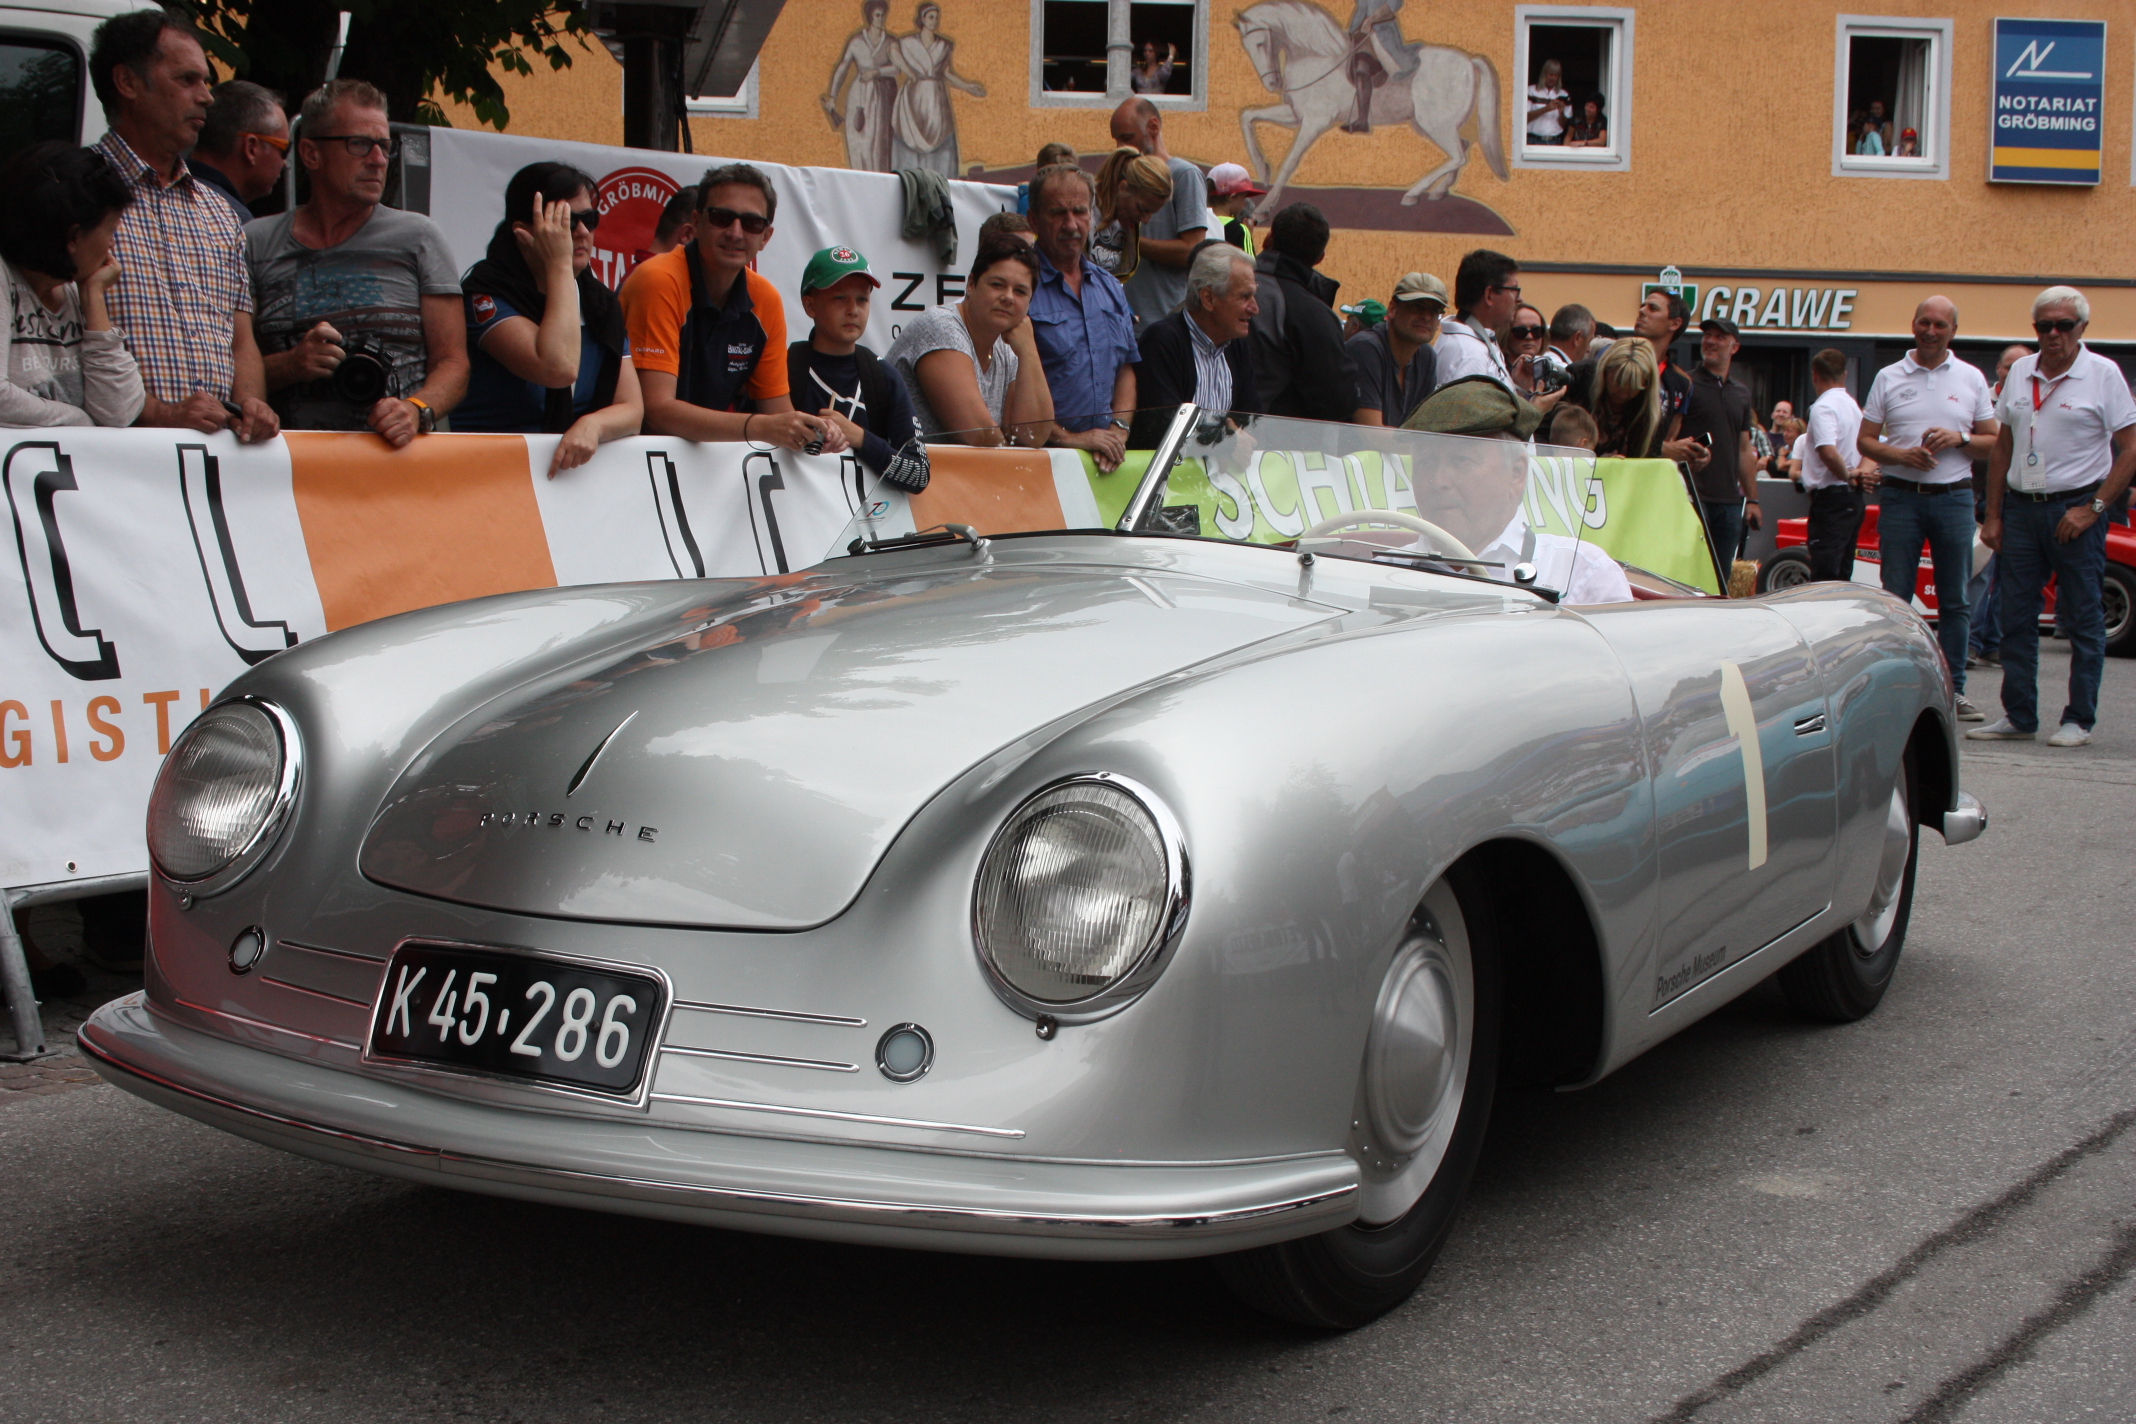 Ferdinandův vnuk startoval na originálním prvním automobilu Porsche vůbec